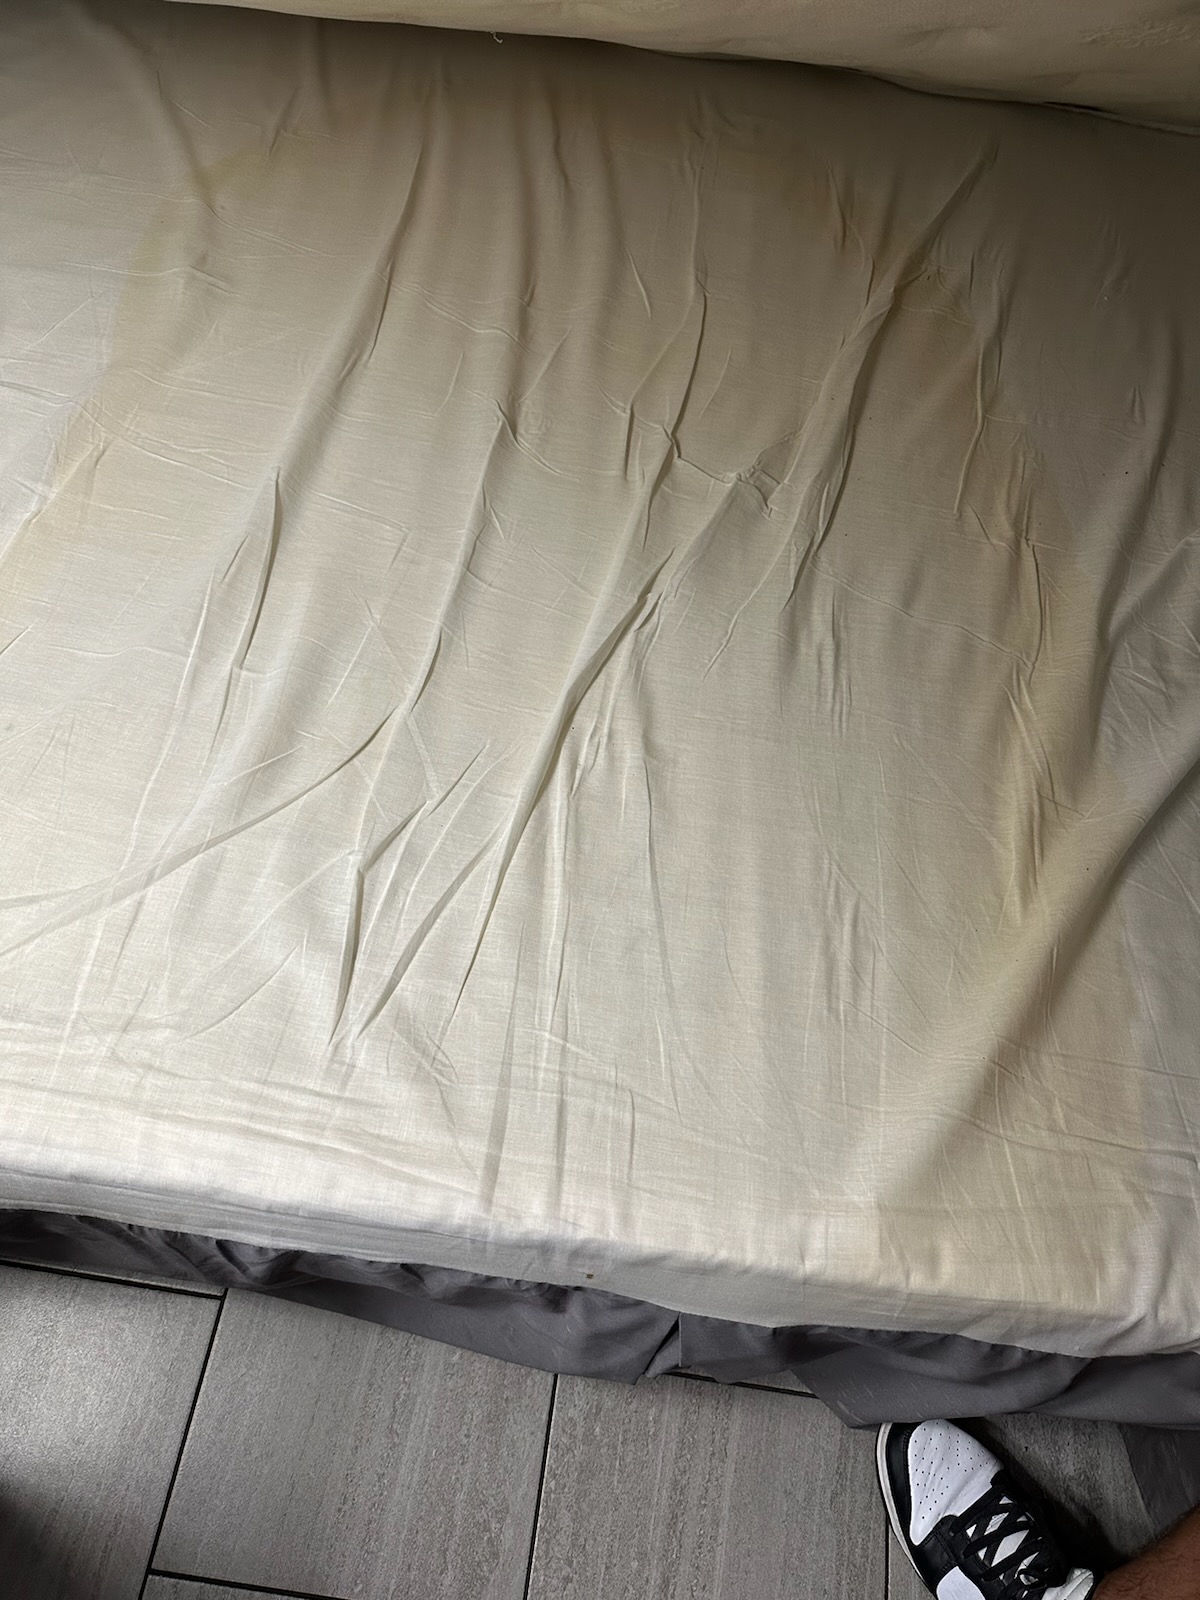 Budget Inn complaint Pee all over mattress, bugs